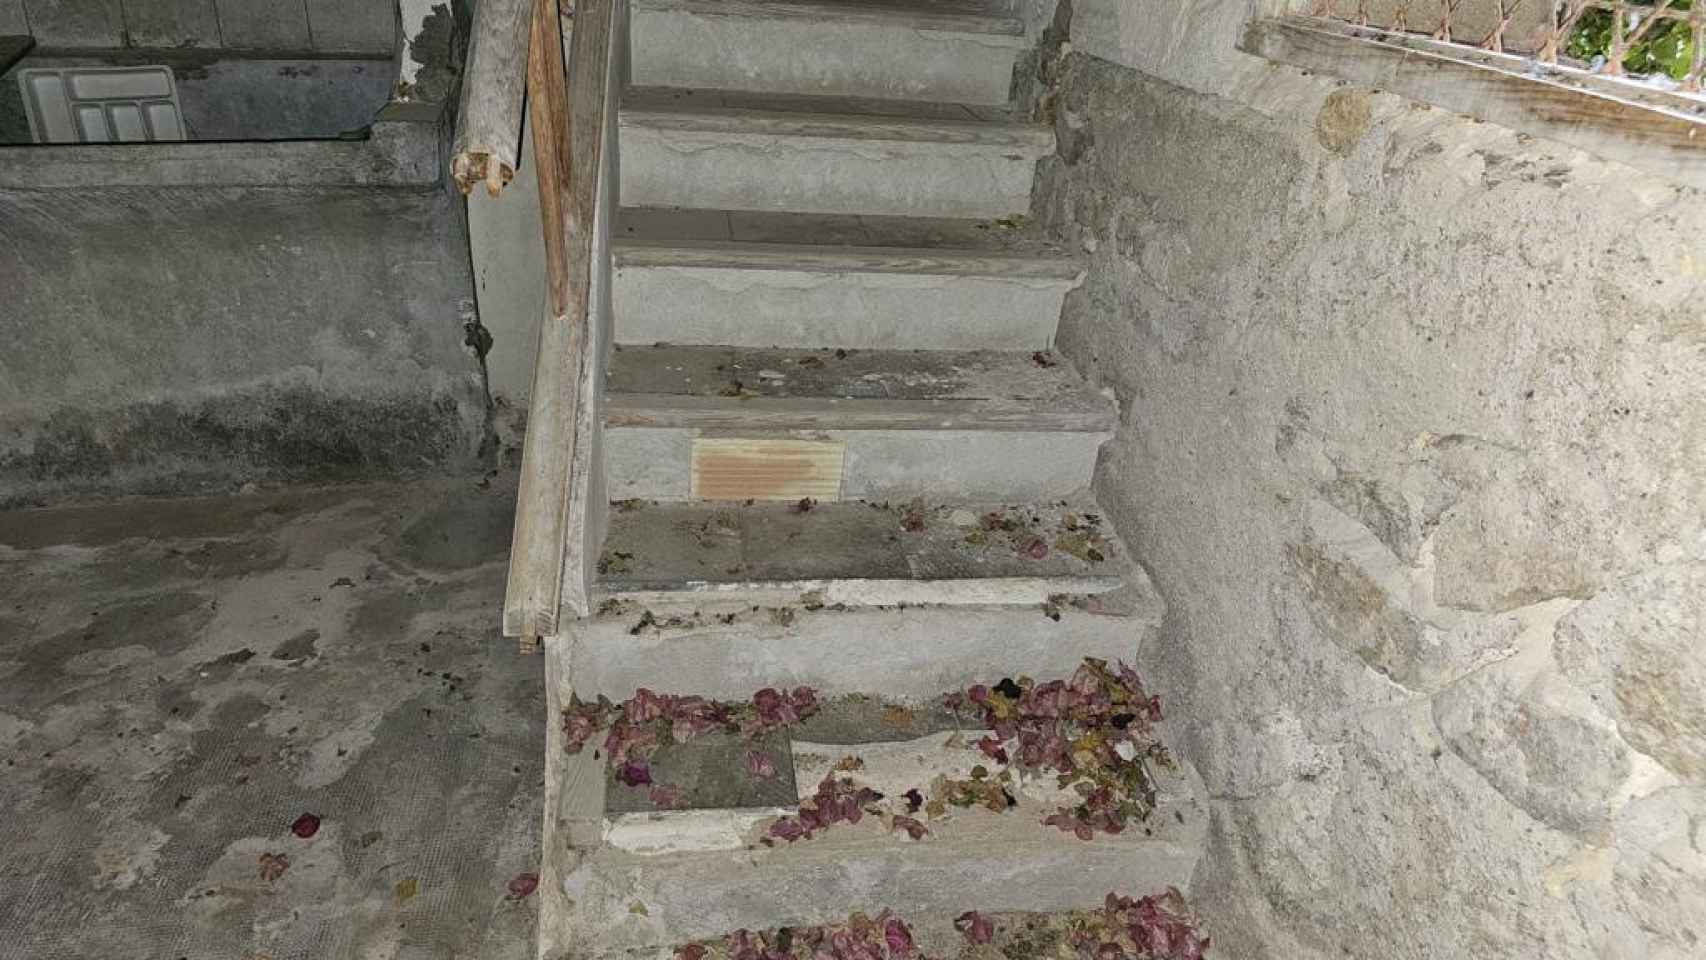 Escaleras en deterioro en el interior del palacio.